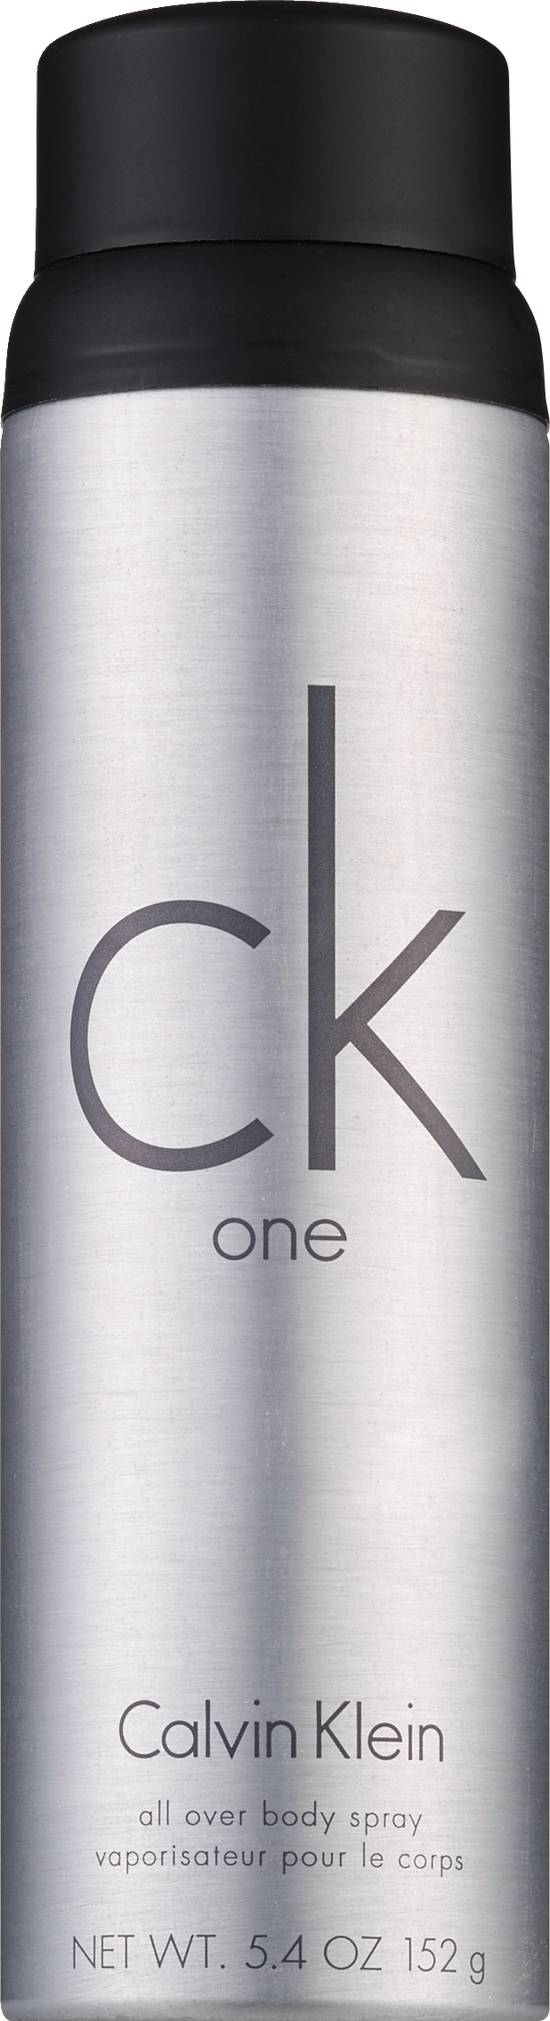 Calvin Klein One All Over Body Spray, 5.4 OZ